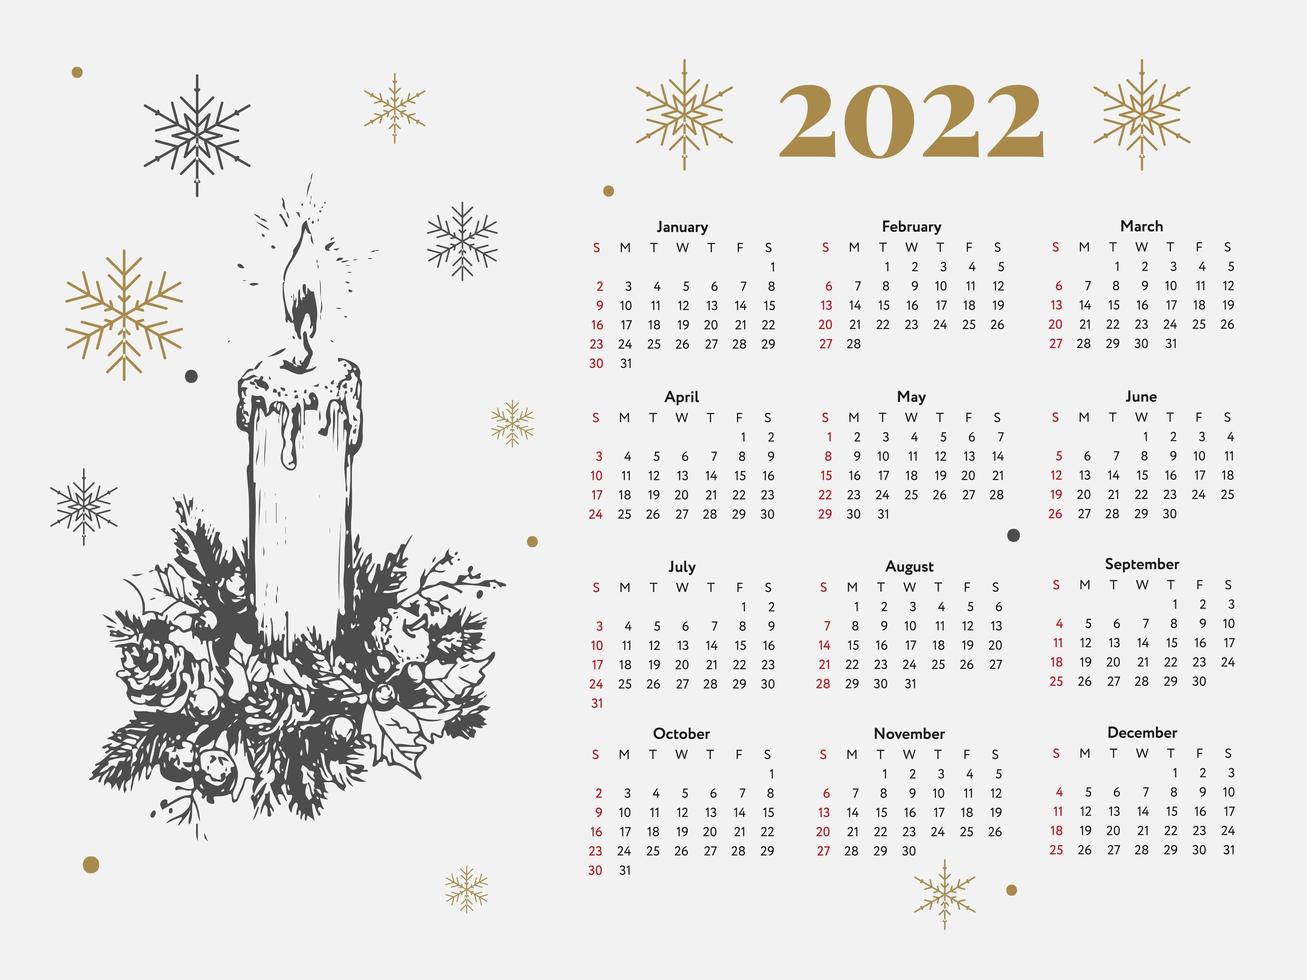 La semaine du calendrier des croquis du nouvel an de l'arbre de Noël 2022 commence le dimanche. vecteur